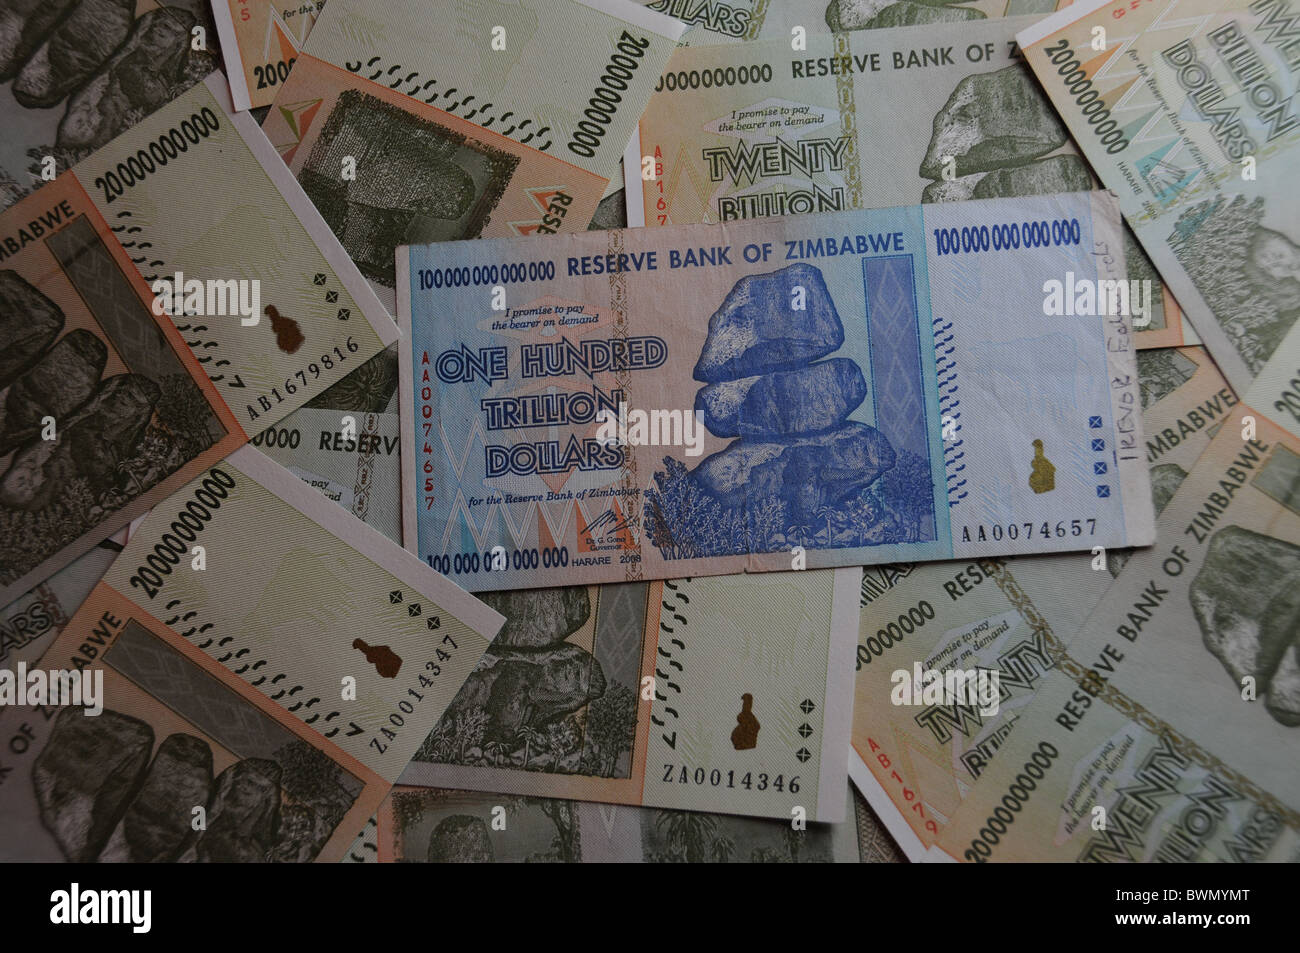 Cien billones de billetes de dólar de Zimbabwe Foto de stock